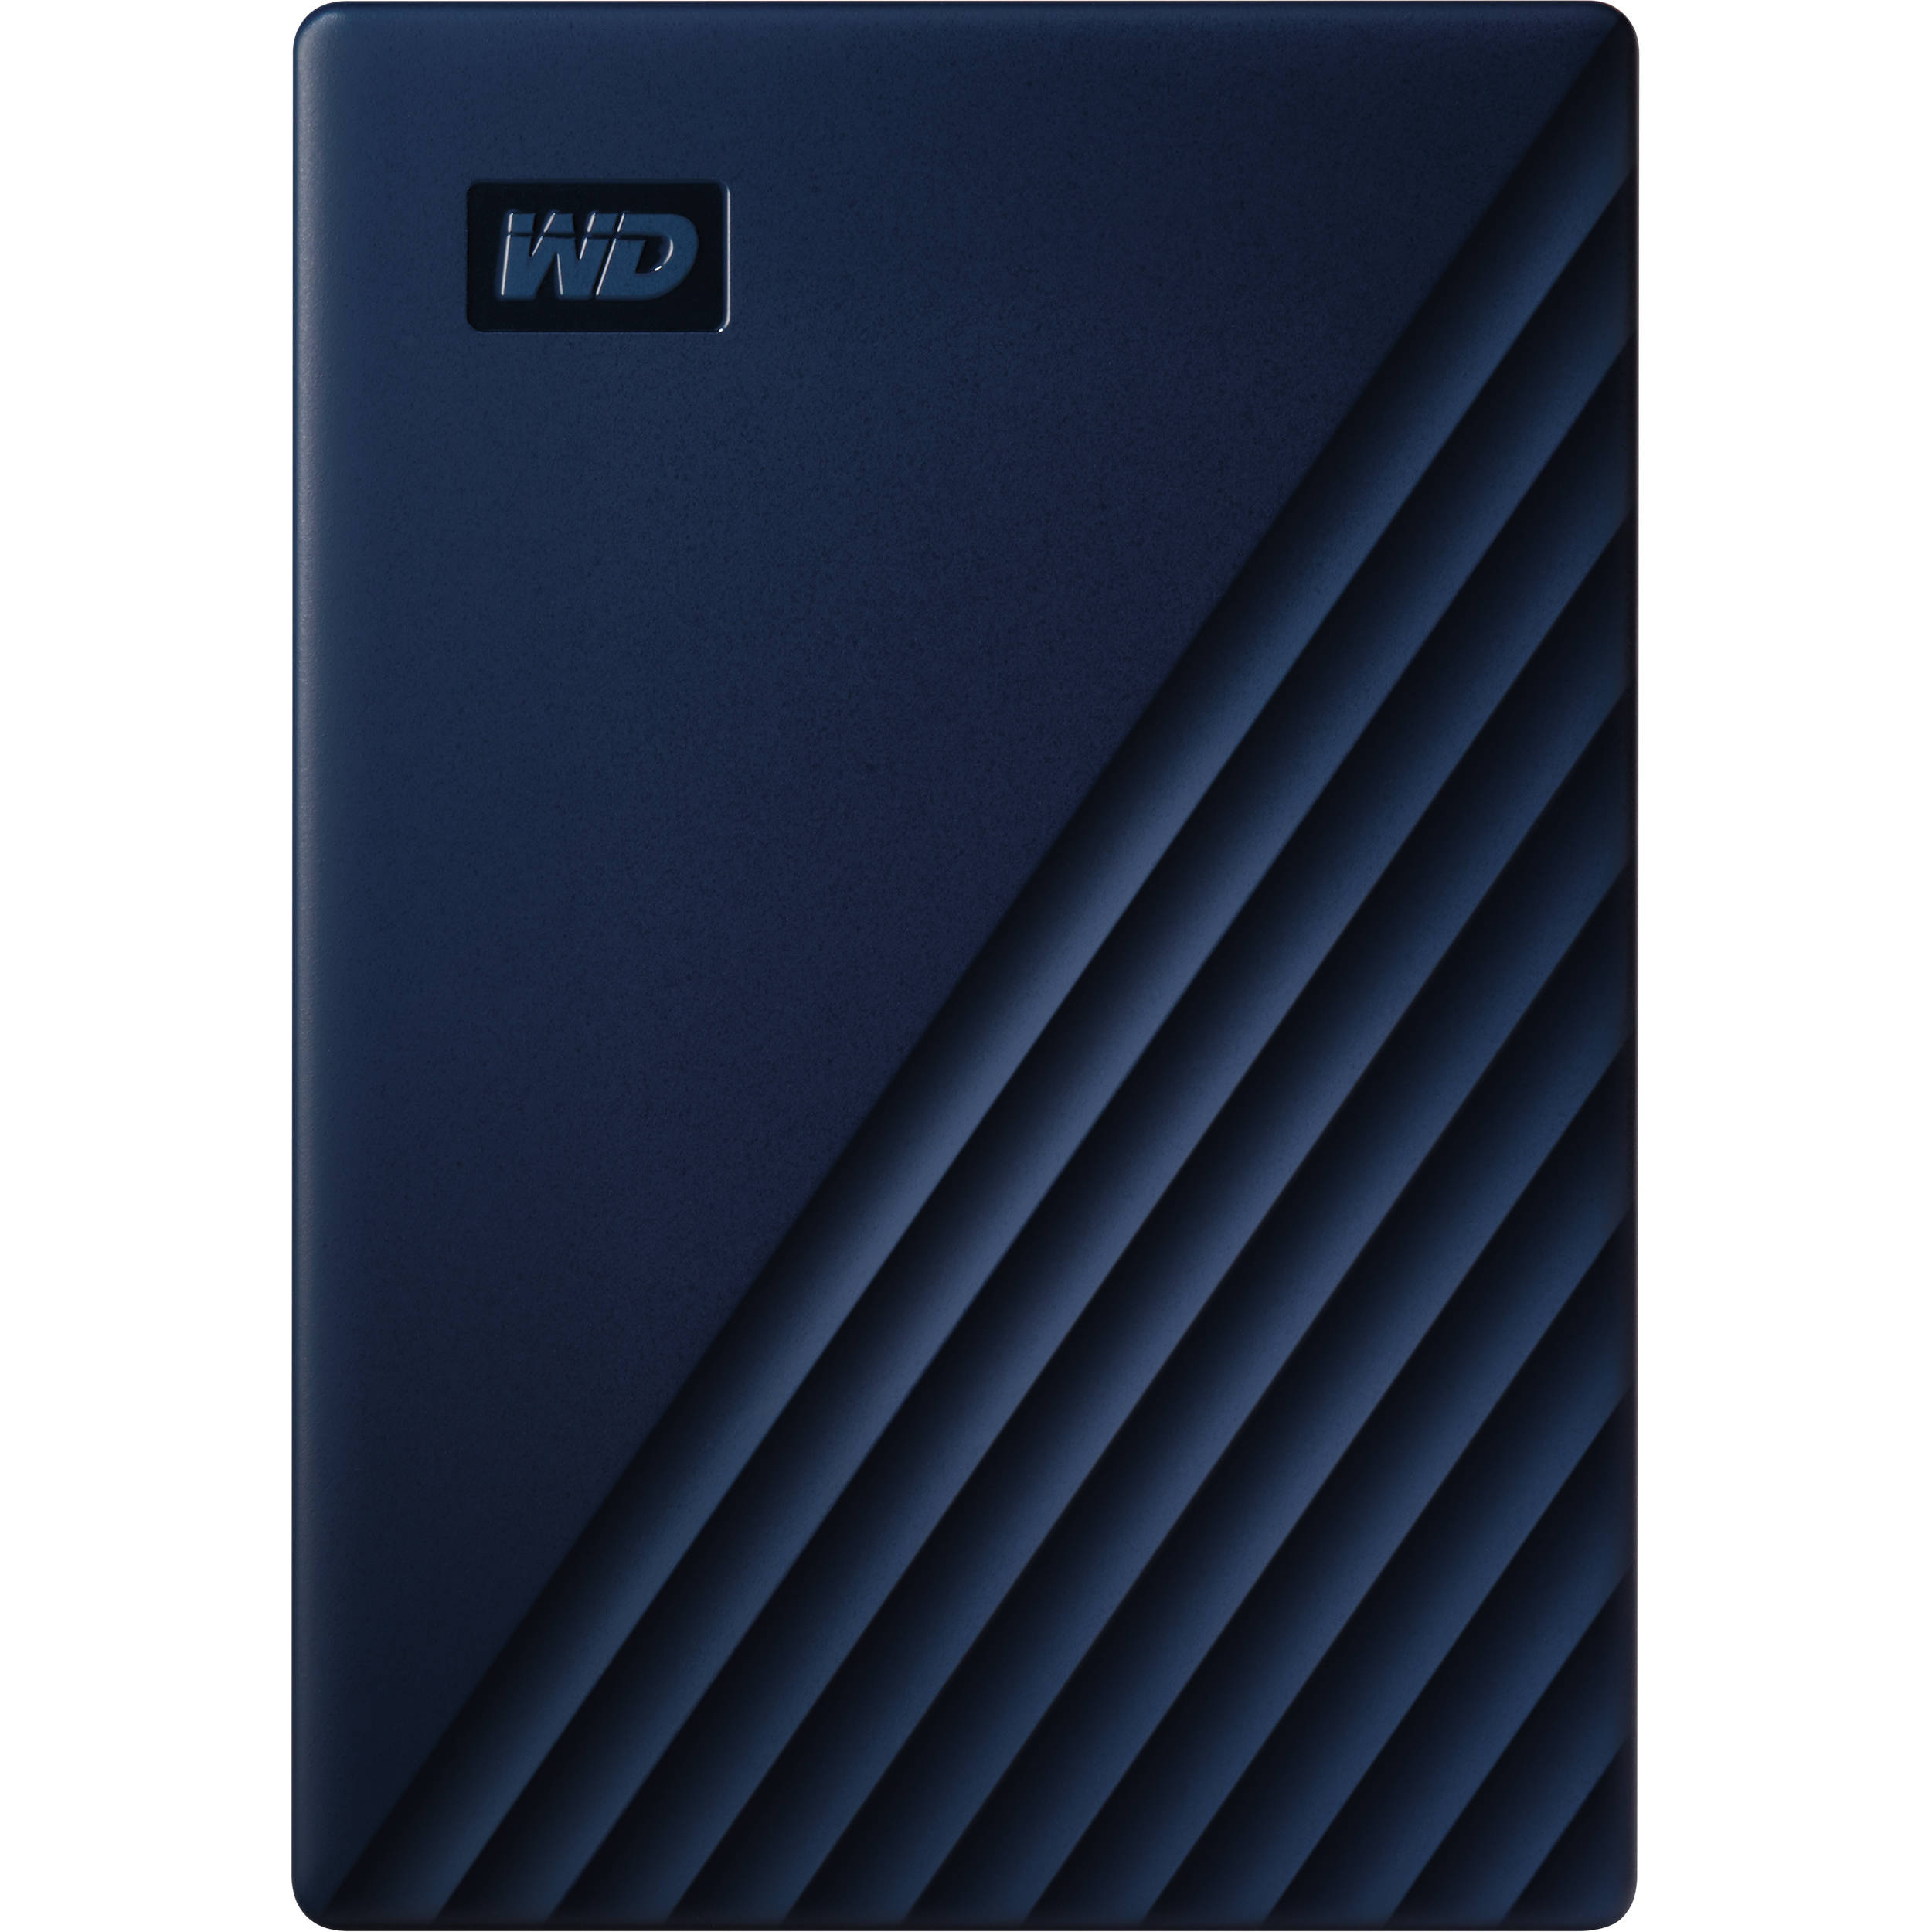 WD 5TB My Passport for Mac USB 3.0 External Hard Drive (Midnight Blue)